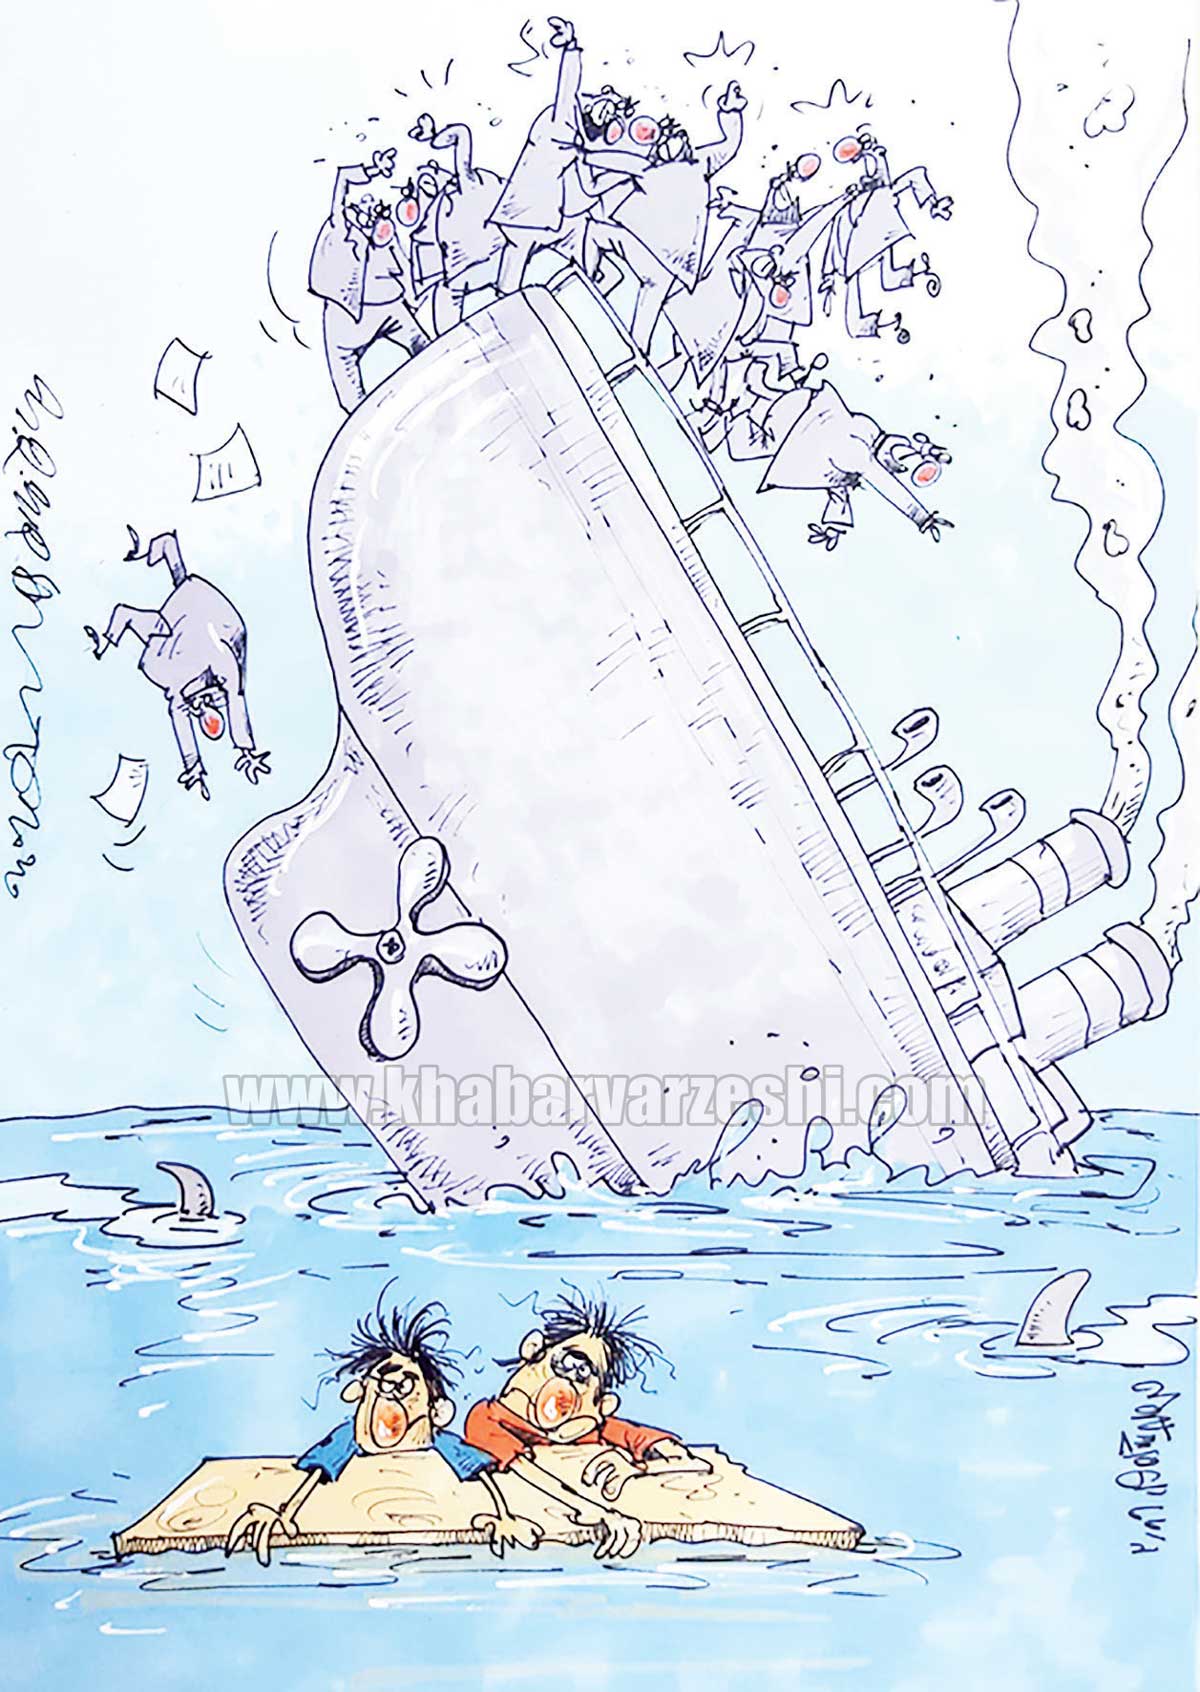 کارتون| تایتانیک فوتبال در آستانه غرق شدن!